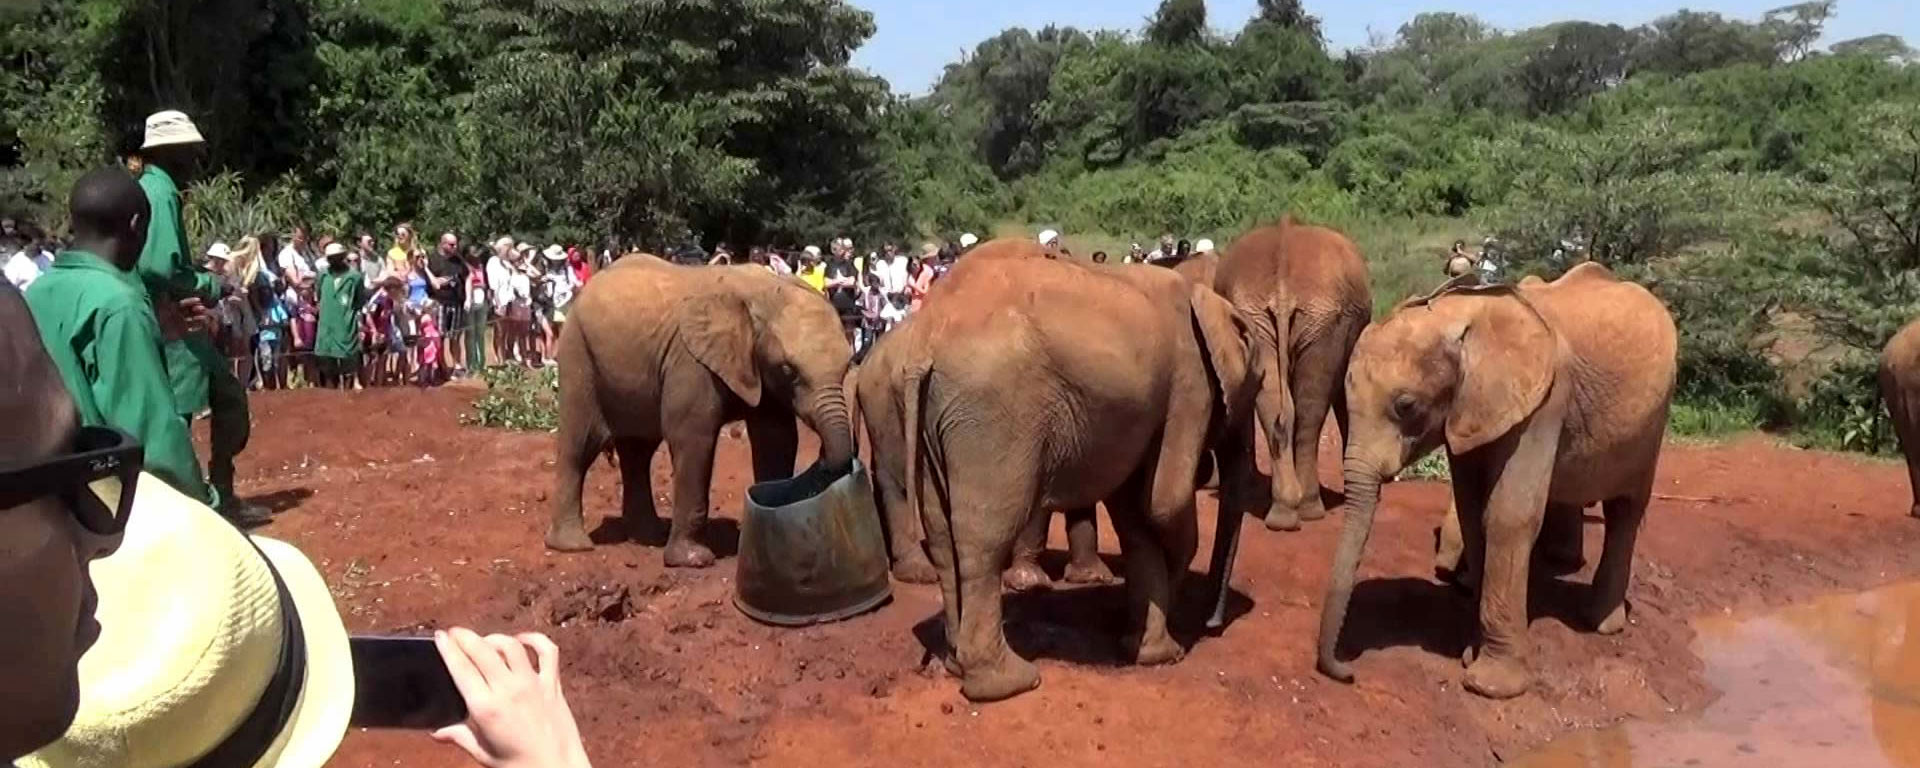 elephant Orphanage